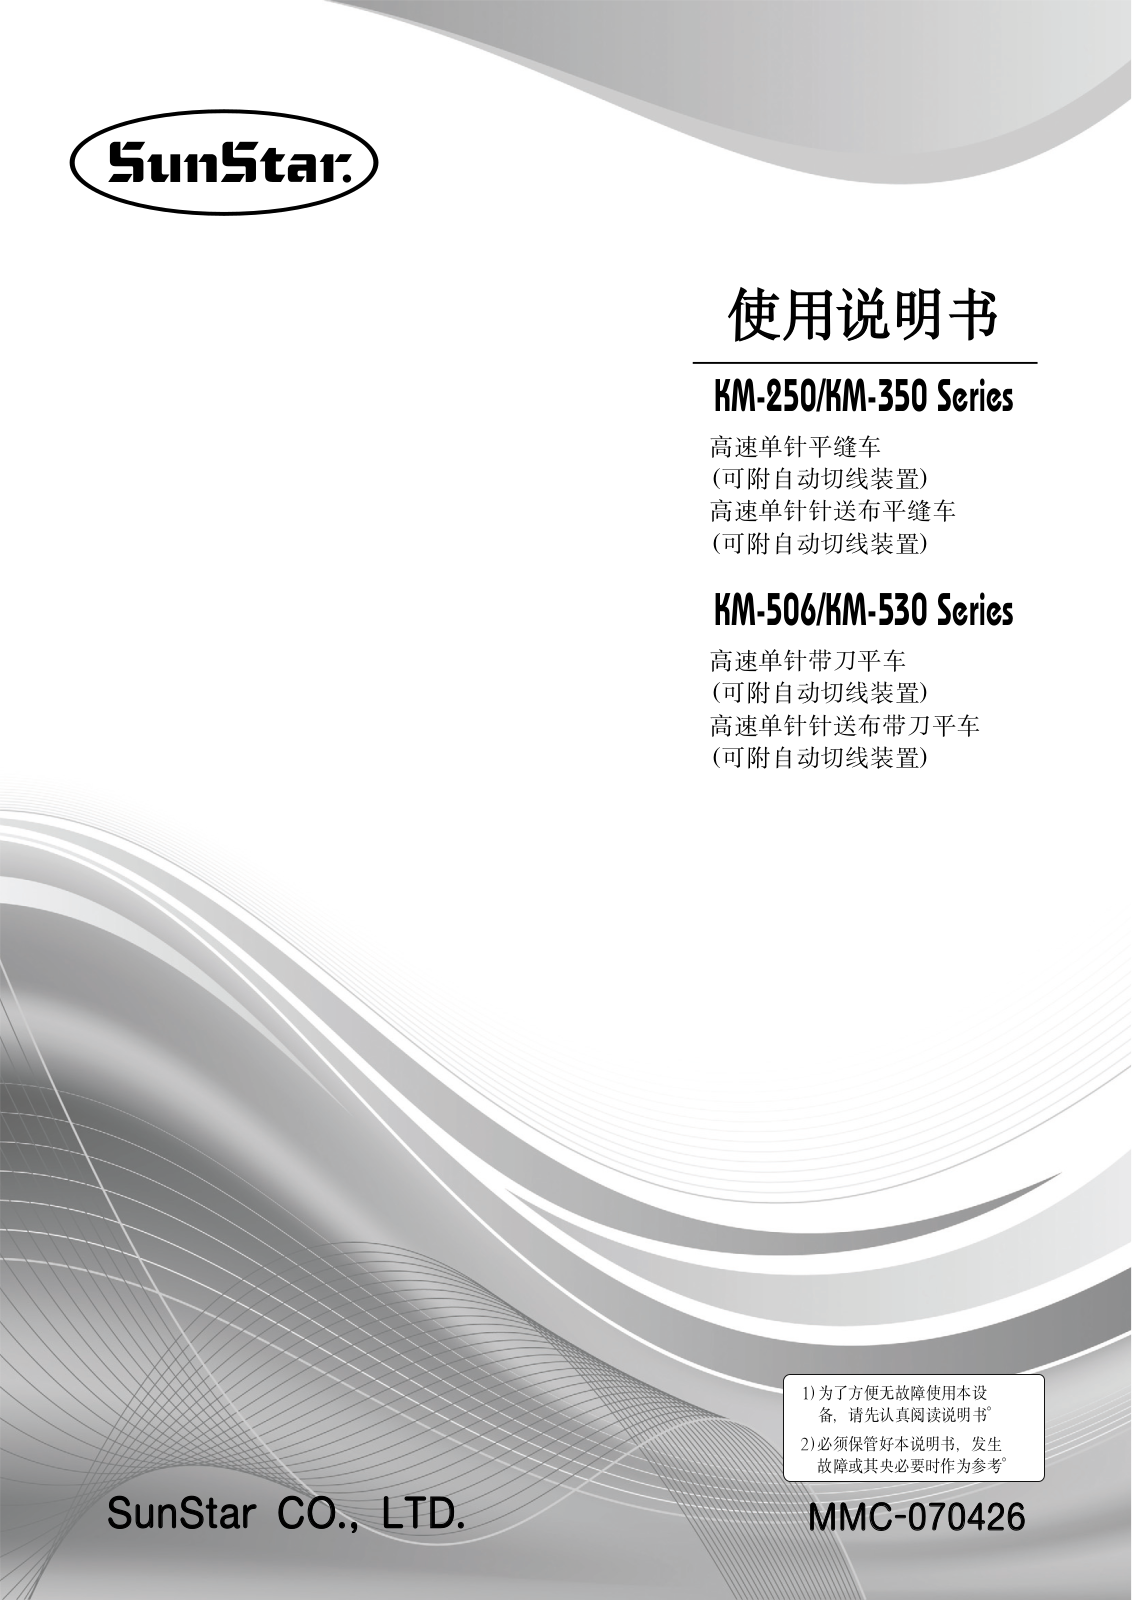 SUNSTAR KM-250, KM-350, KM-506, KM-530 User Manual